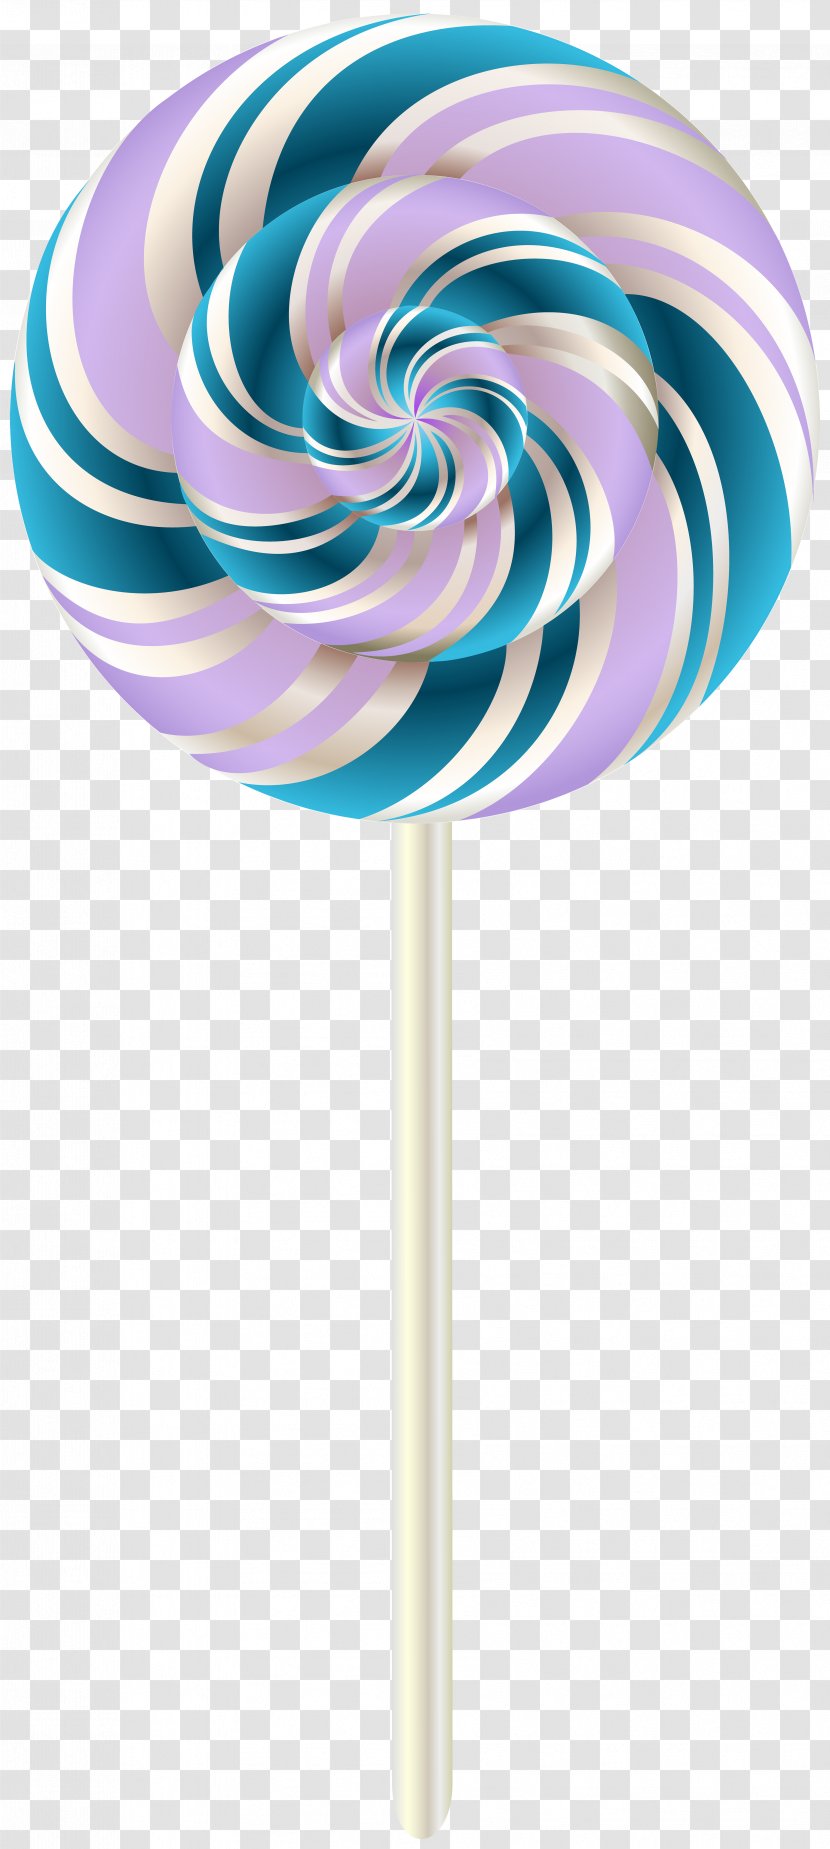 Lollipop Stick Candy Clip Art - Spiral Transparent PNG